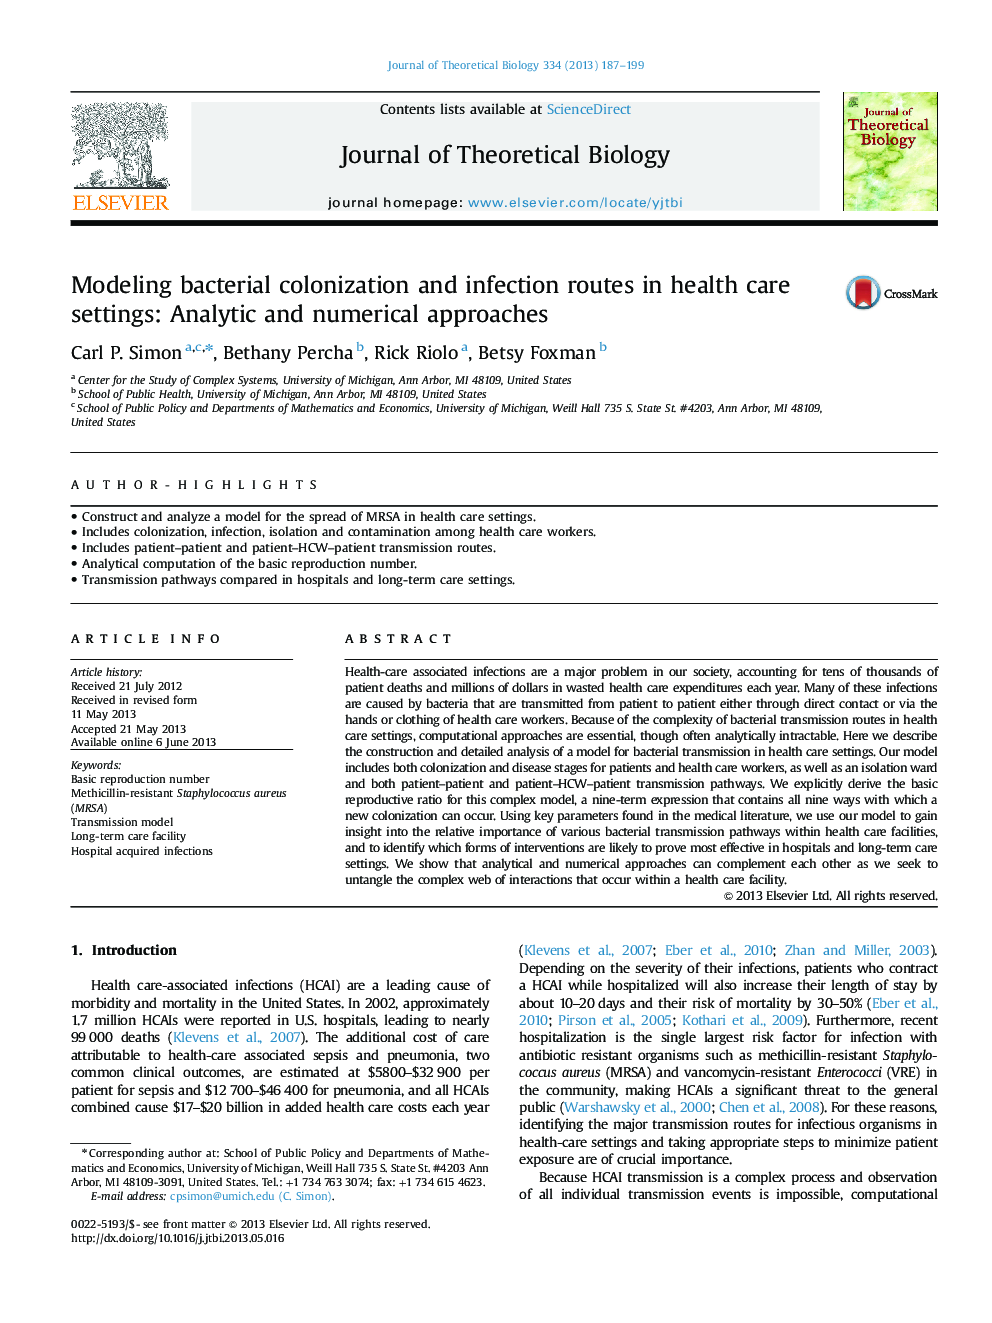 مدل سازی کلونیزاسیون باکتری ها و مسیرهای عفونت در تنظیمات مراقبت های بهداشتی: رویکردهای تحلیلی و عددی 